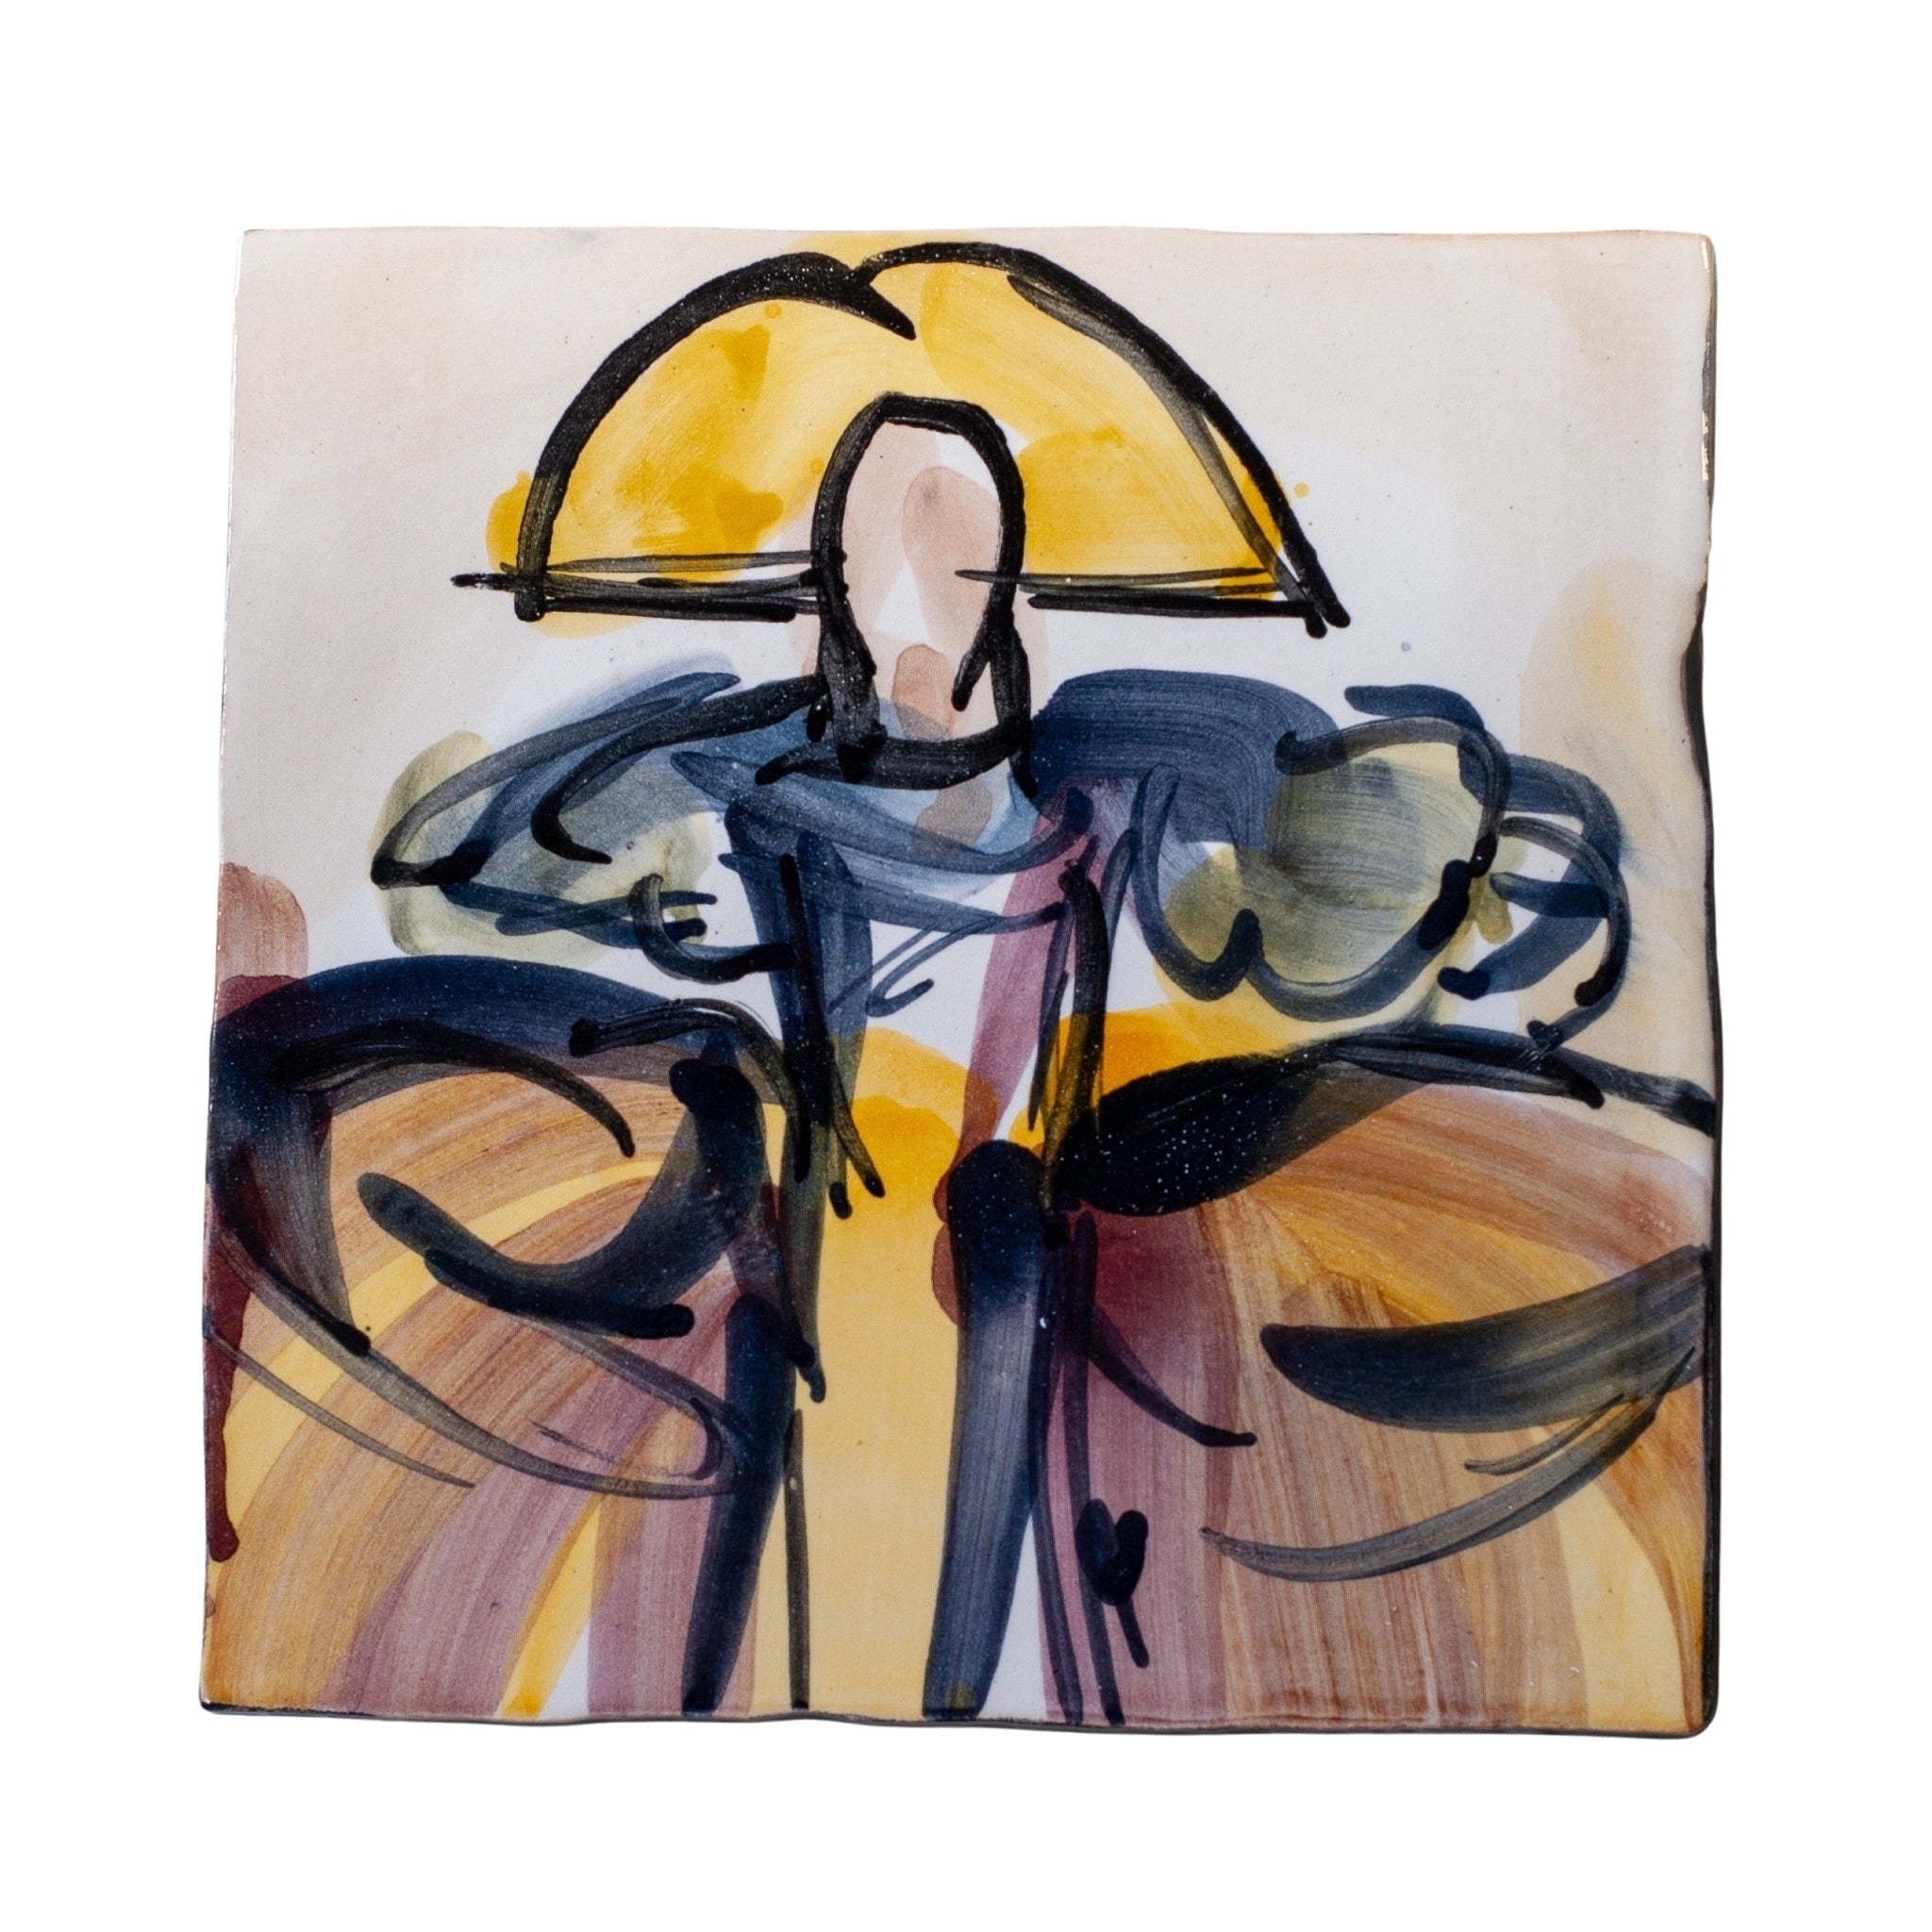 Håndmalet flise med spansk dame - La Menina keramik fra Rune-Jakobsen Design